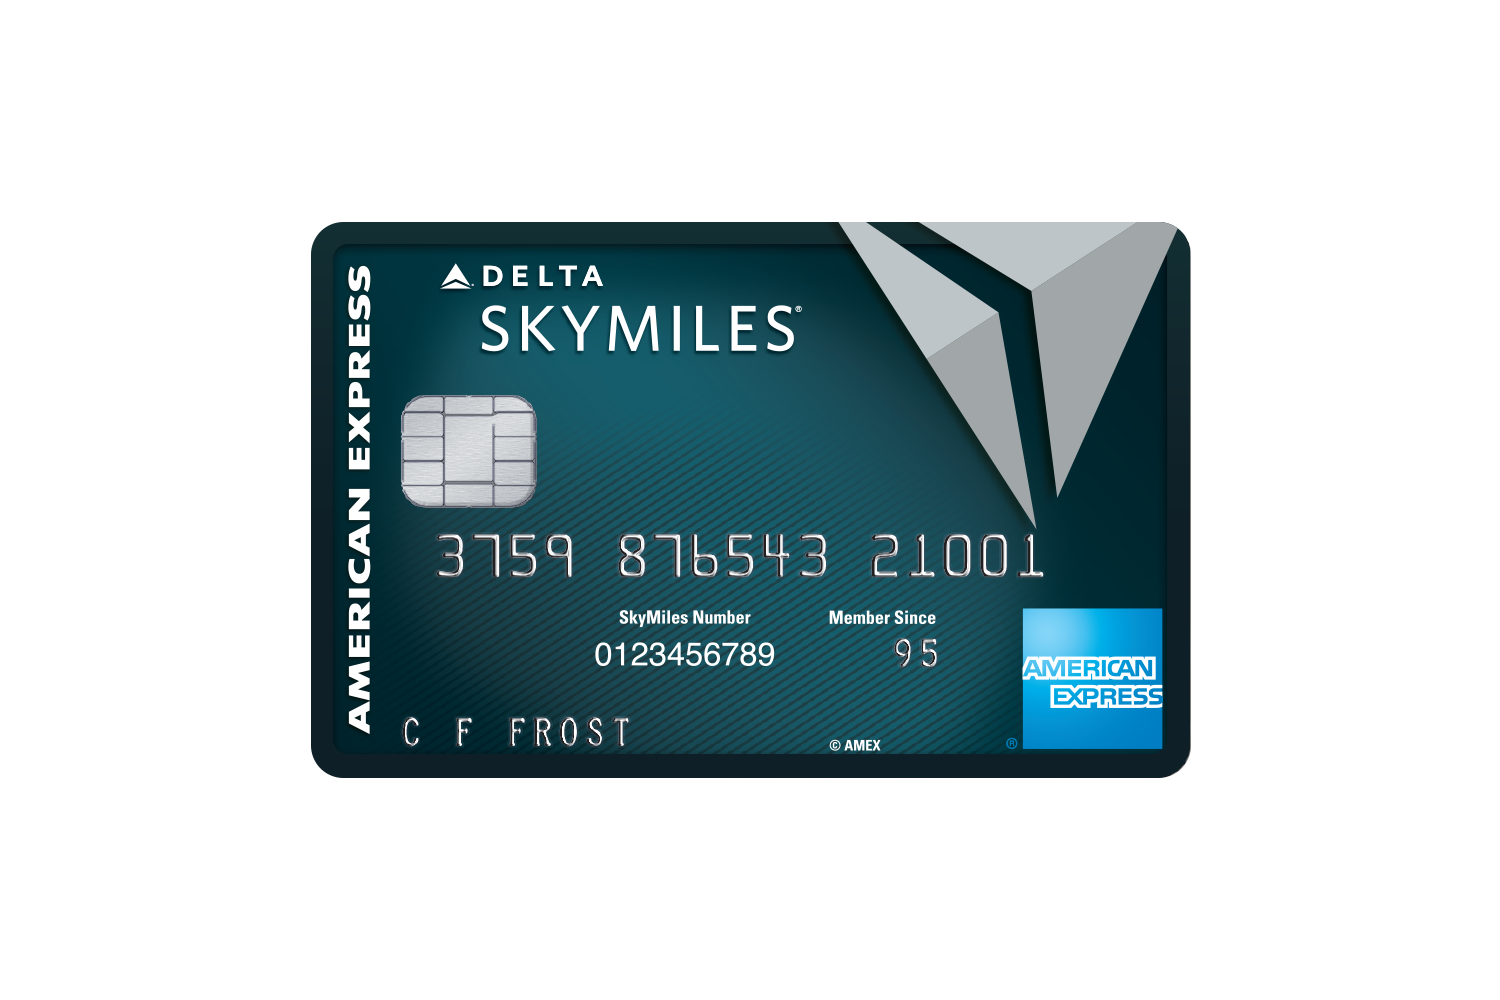 Delta Reserve Credit Card